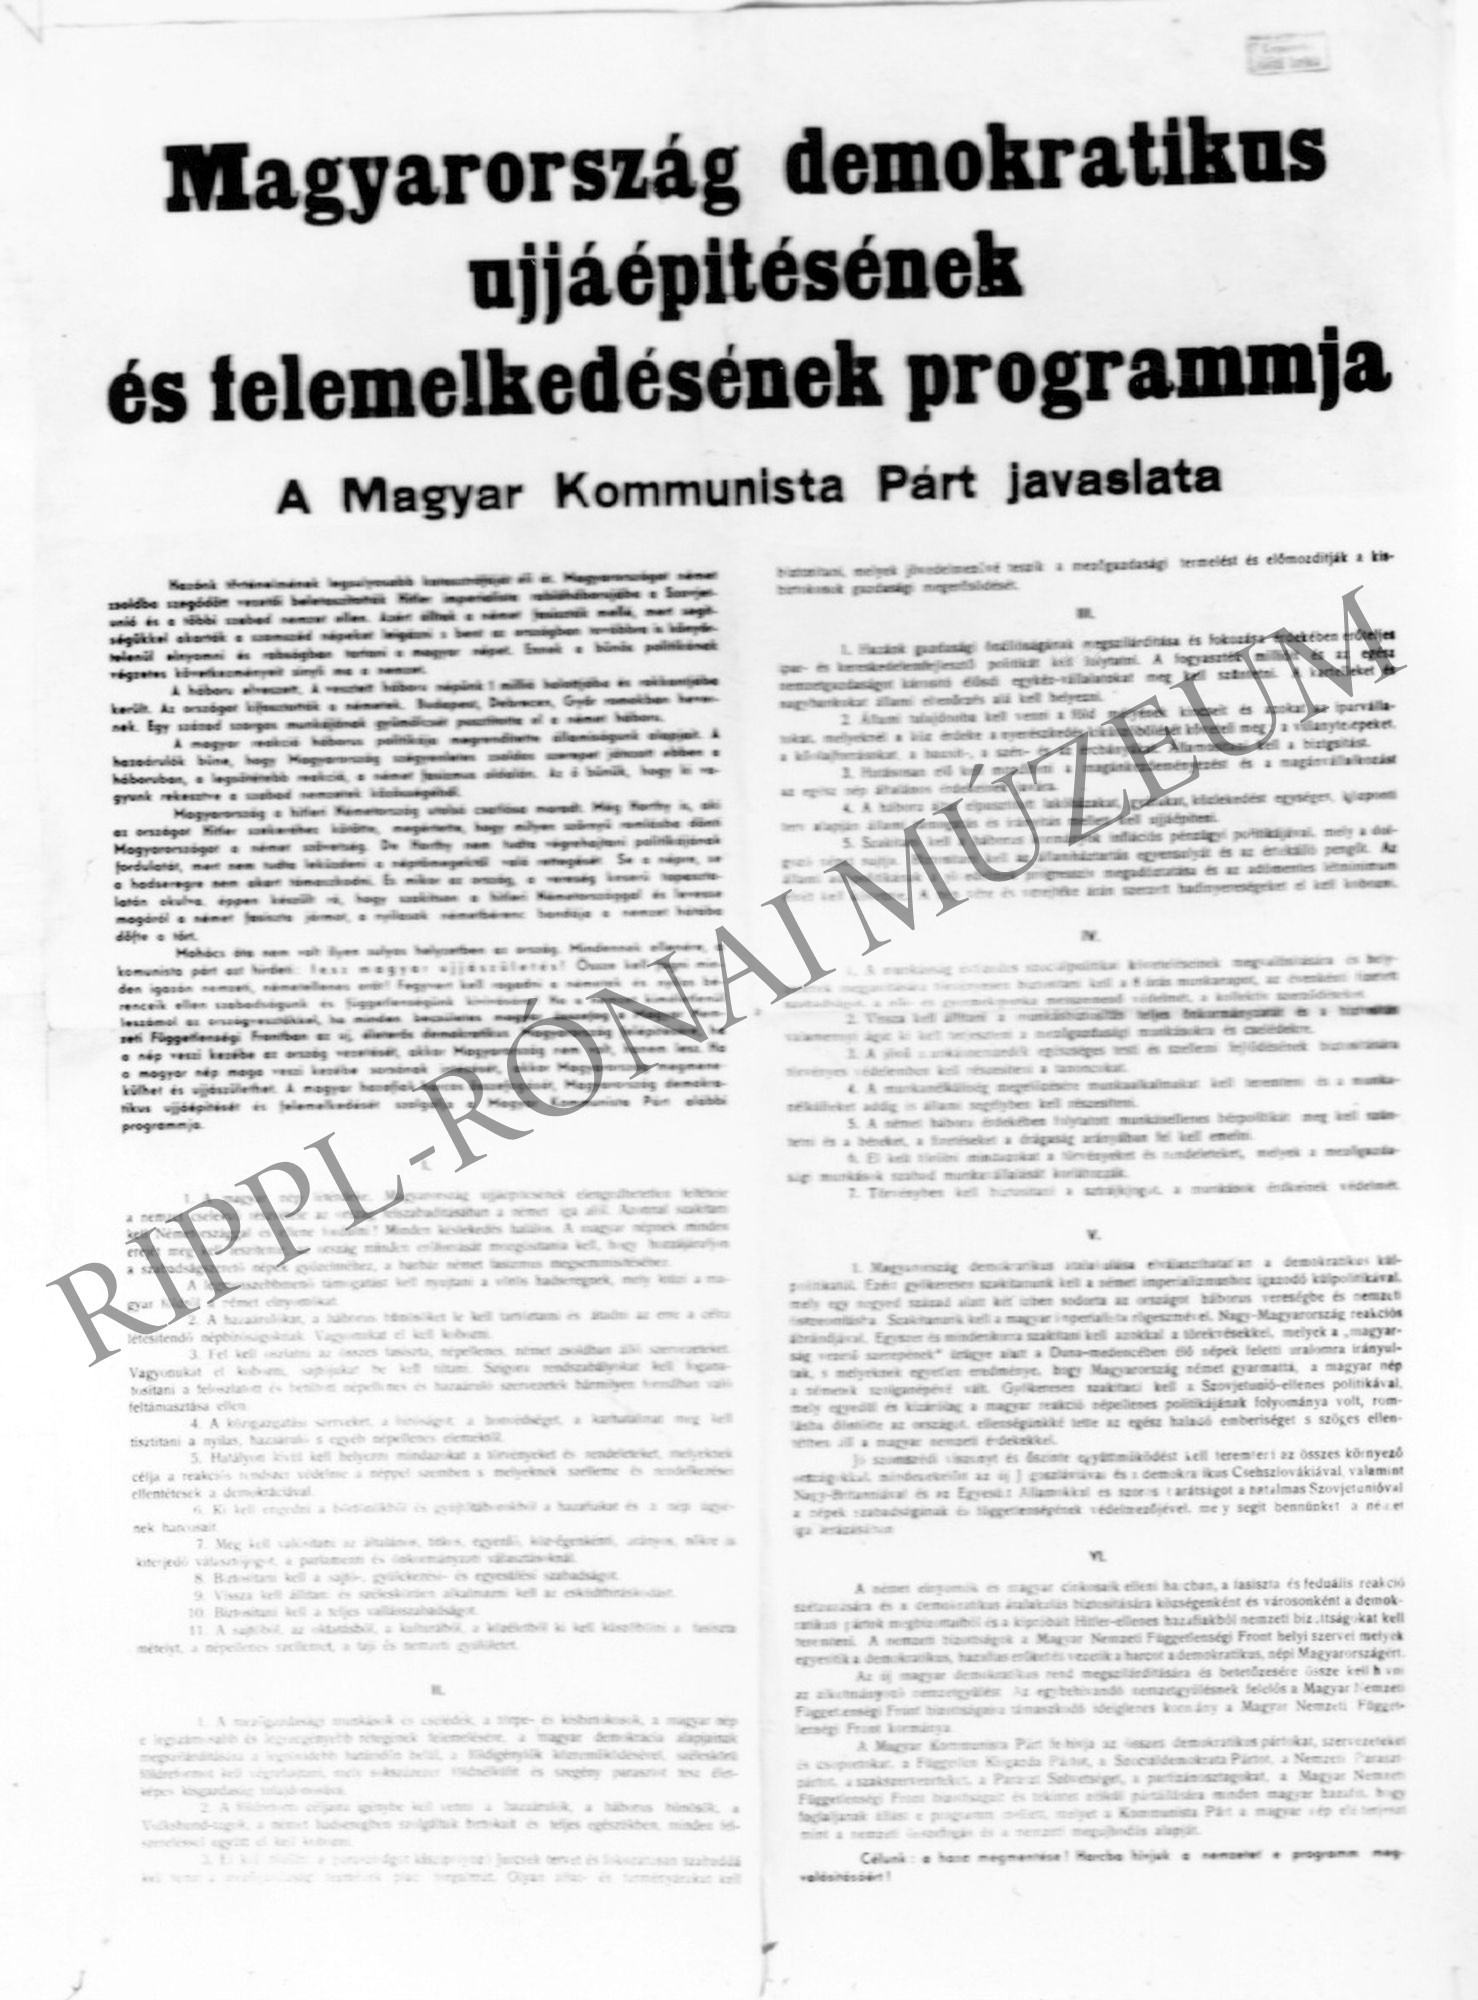 Magyarország felemelkedésének és újjáépítésének programja (MKP) (Rippl-Rónai Múzeum CC BY-NC-SA)